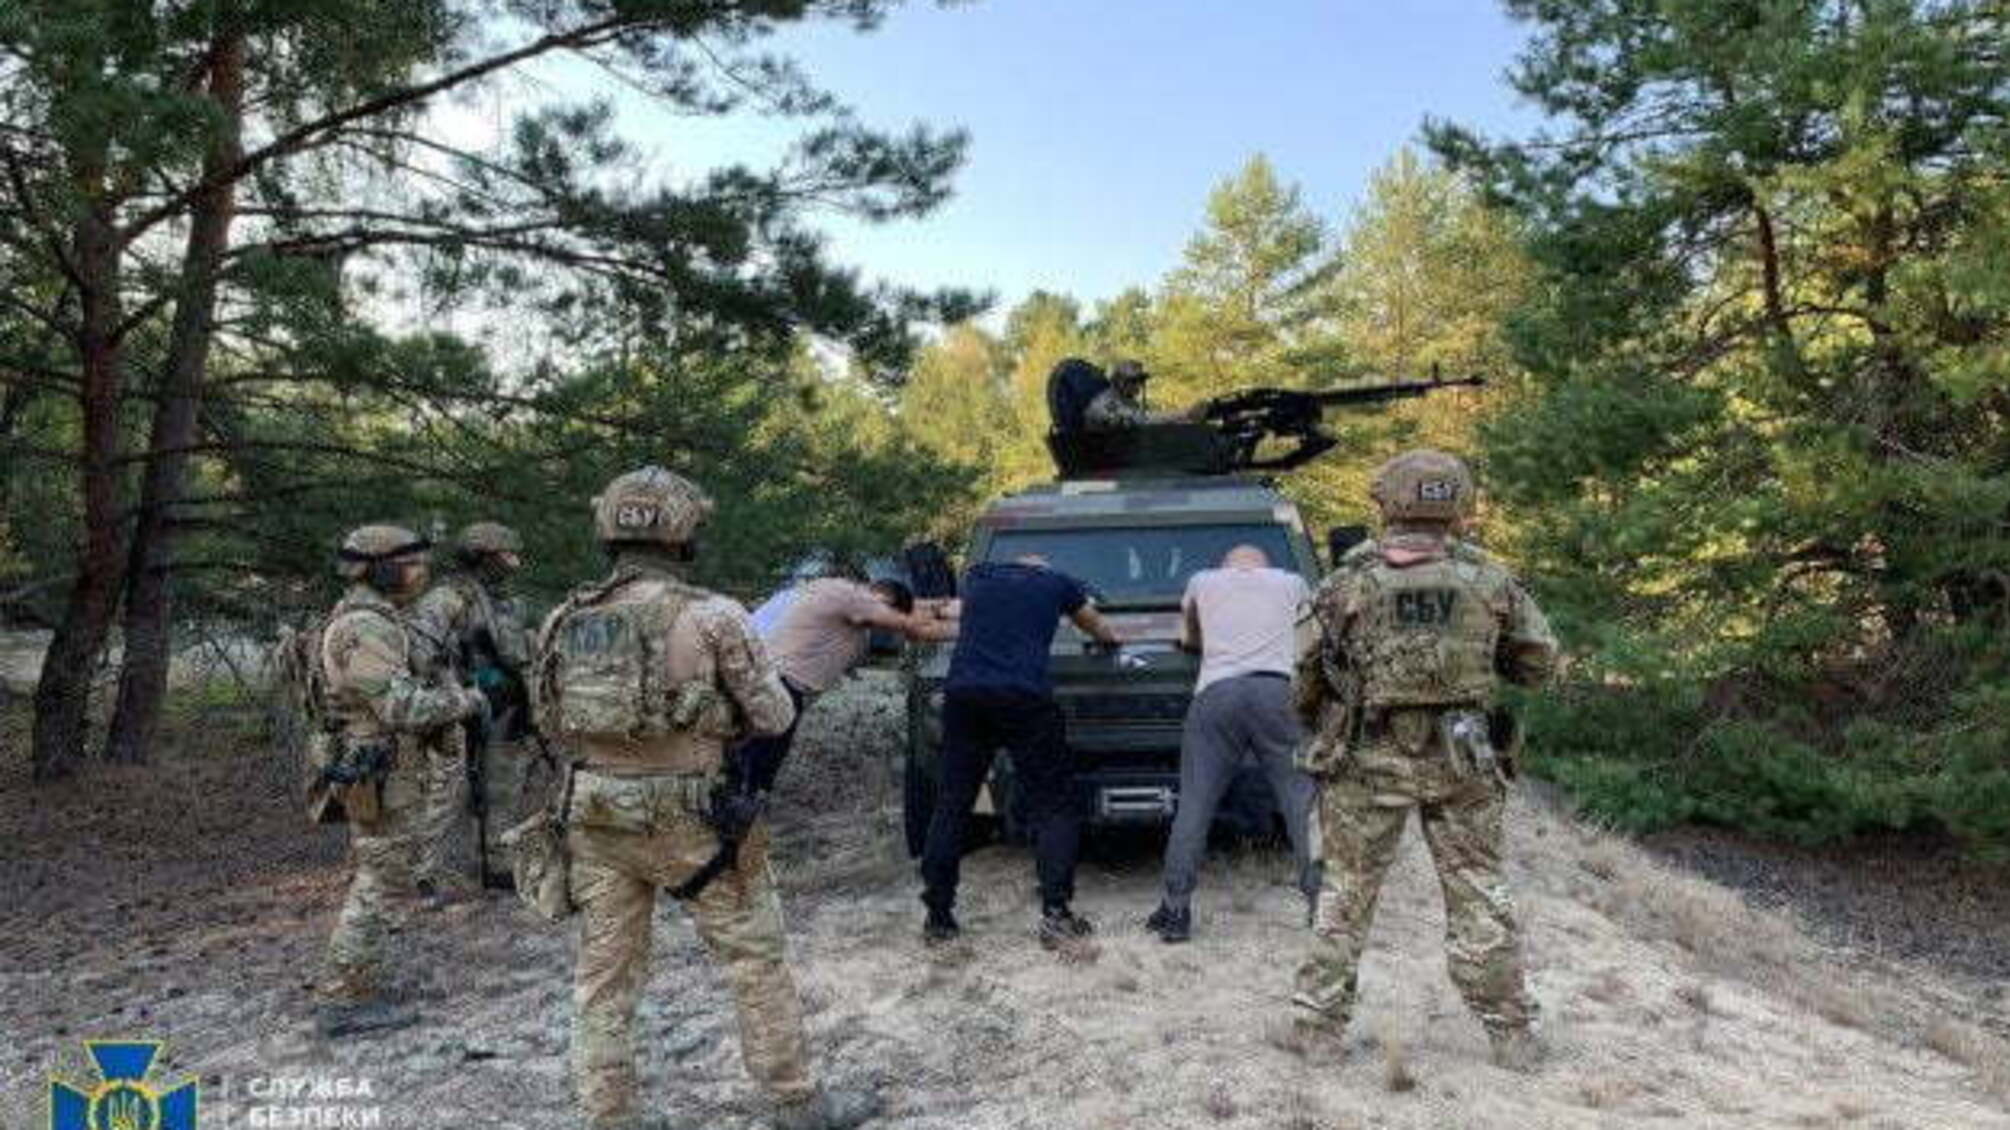 СБУ провела антитерористичні навчання поблизу кордону з Білоруссю